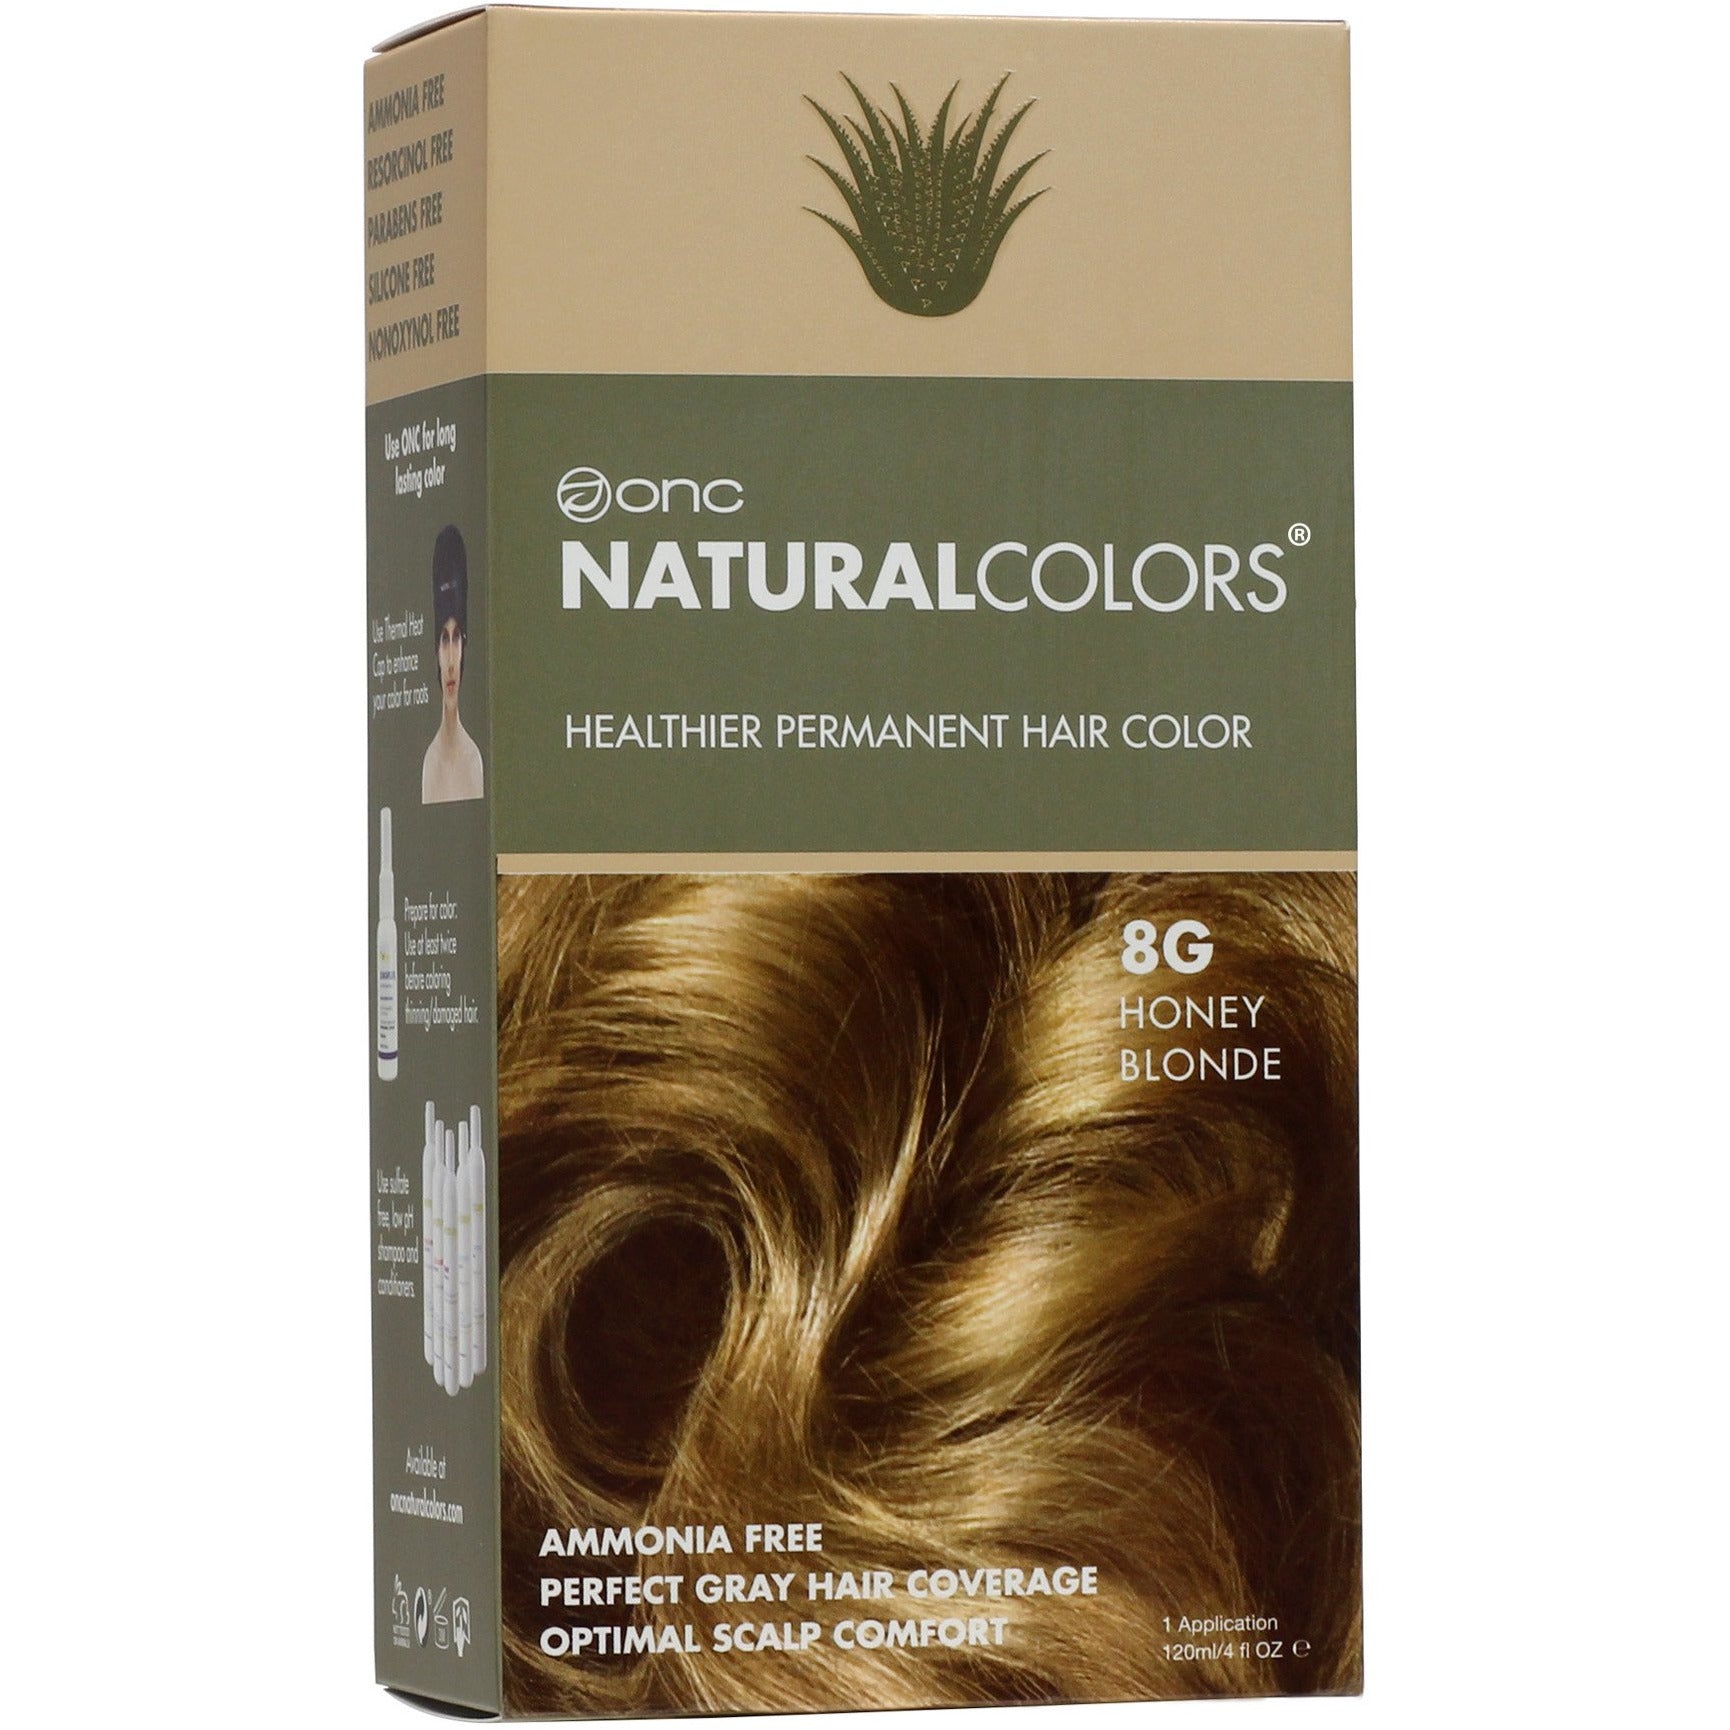 ONC NATURALCOLORS 8G Honey Blonde Hair Dye – oncnaturalcolors.com